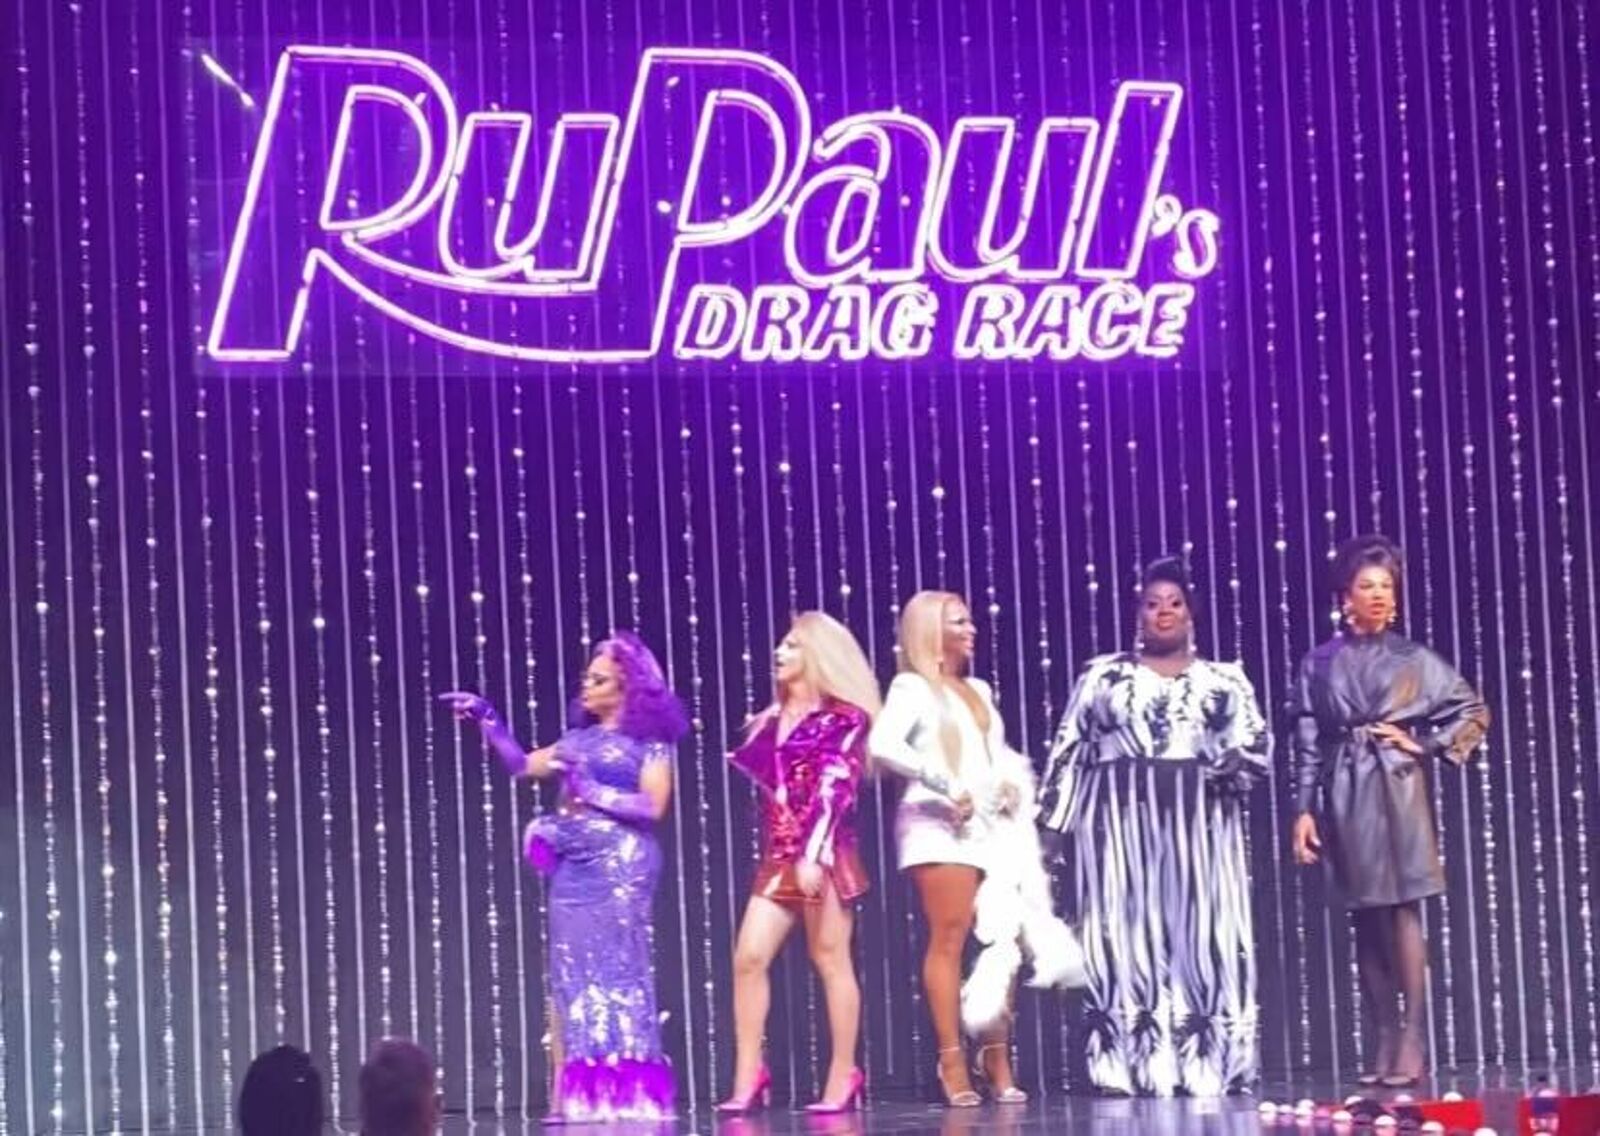 Nobu Hotel Las Vegas, Ru Pauls Drag Race